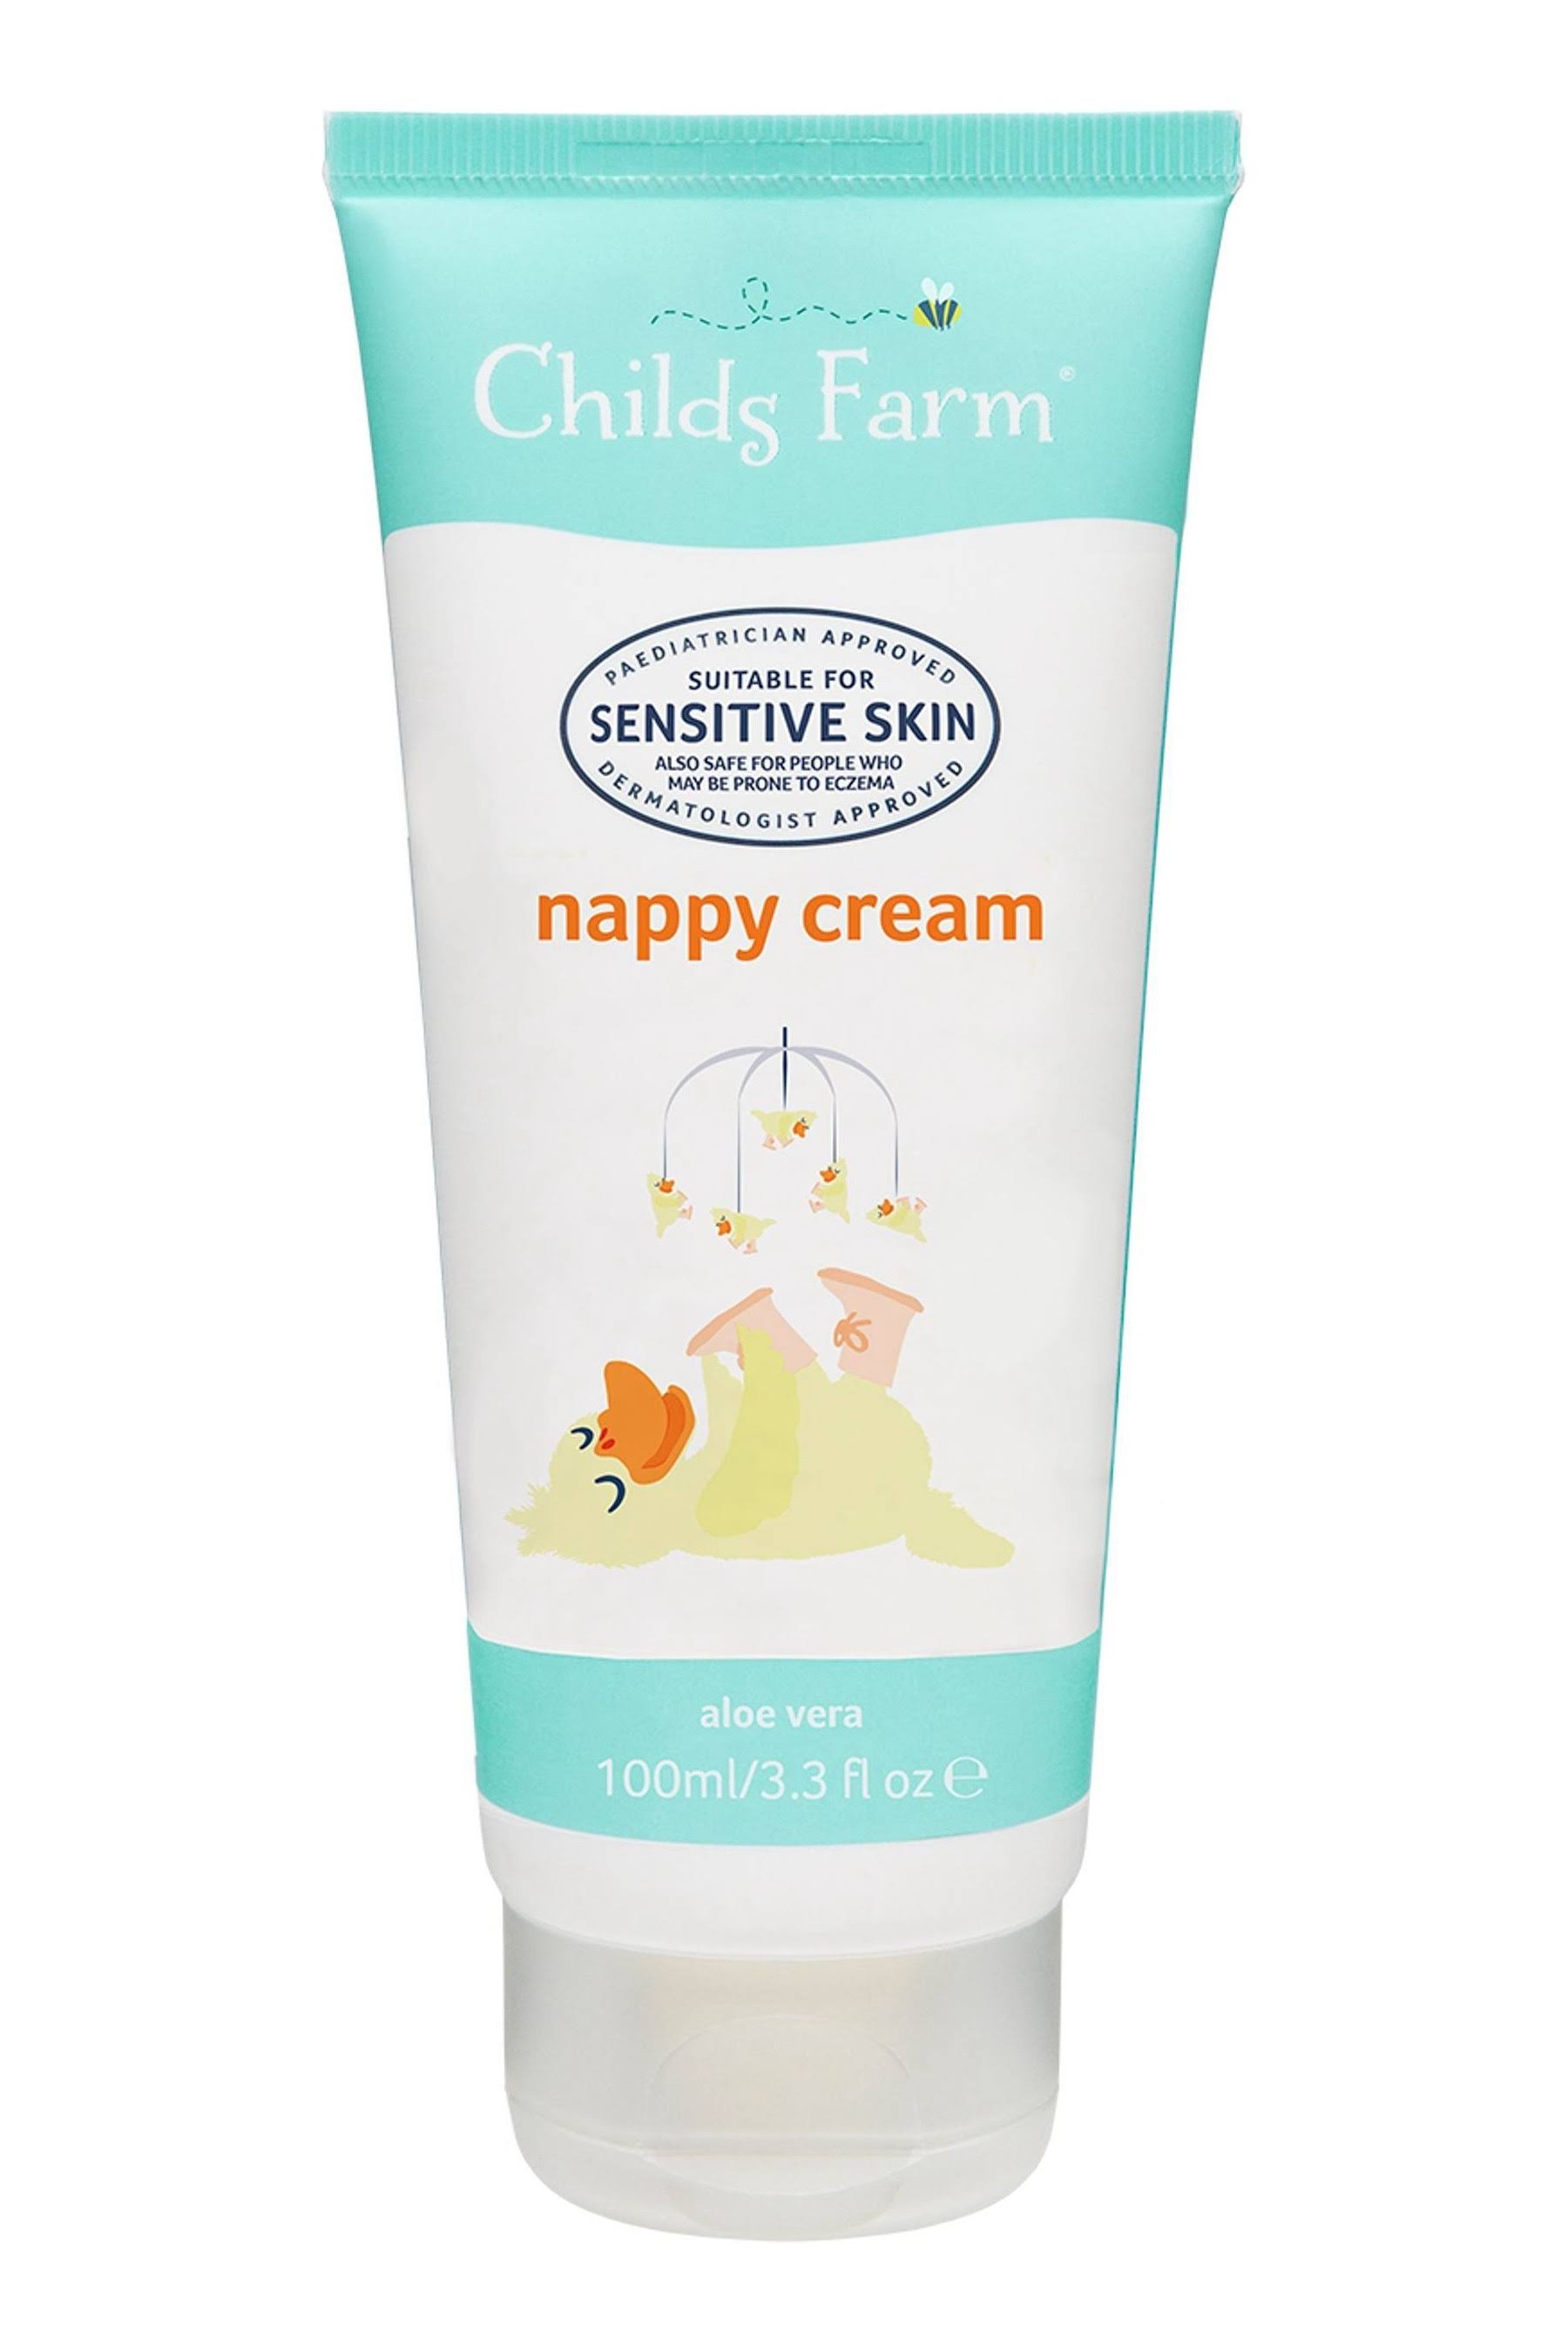 Childs Farm Organic Aloe Vera Nappy Cream - 100ml